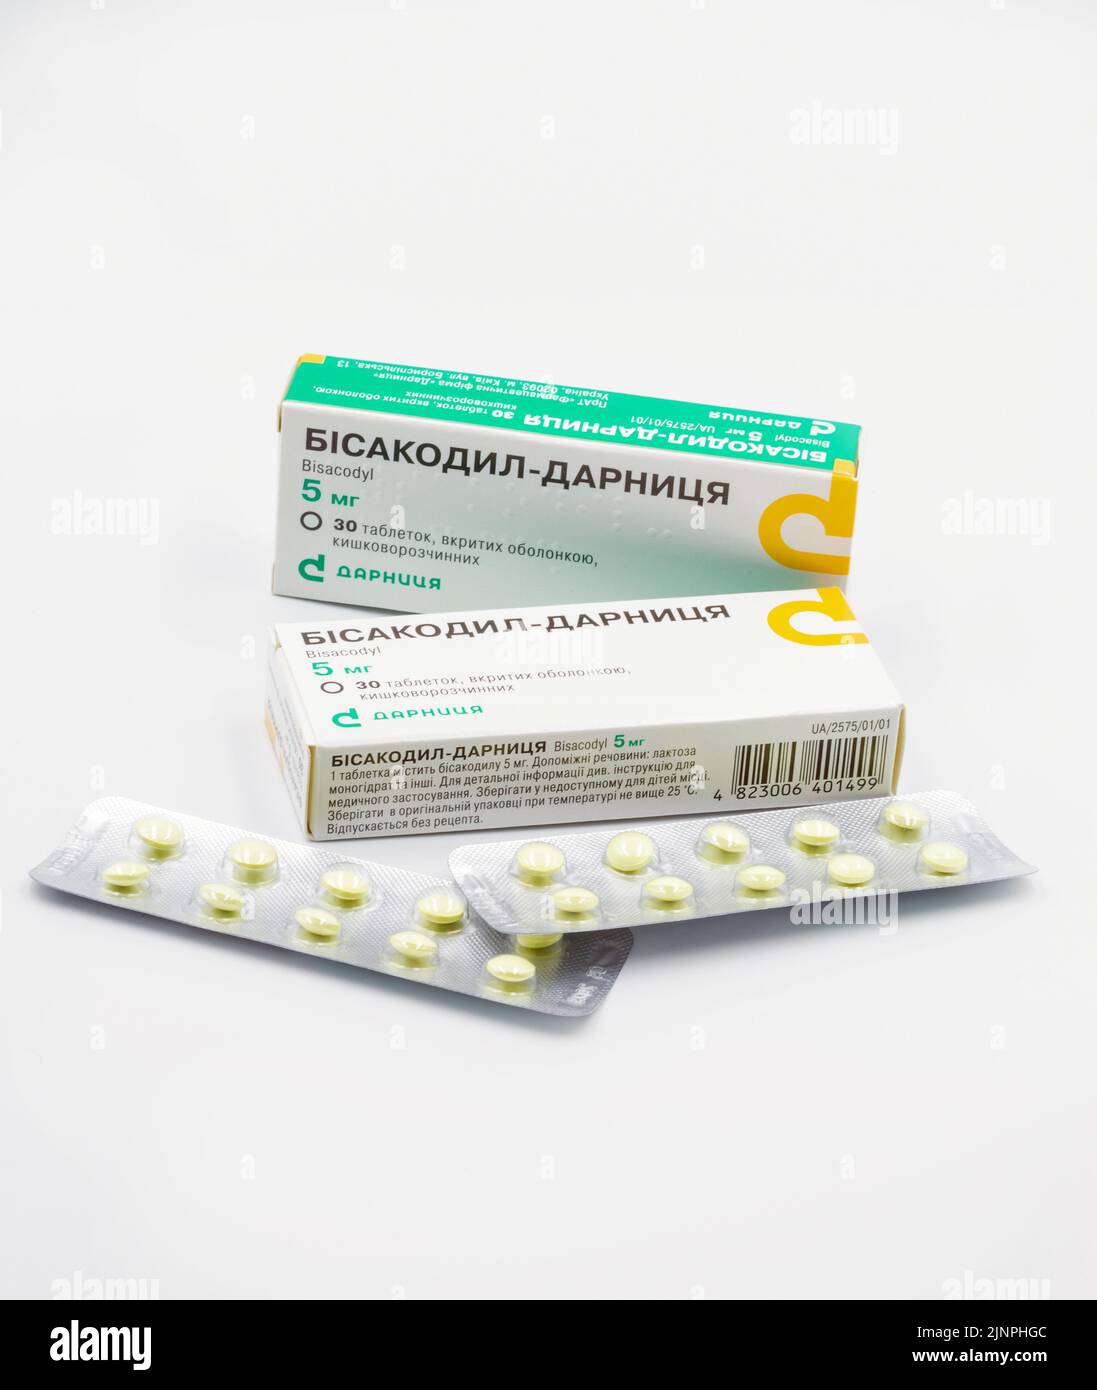 Kiev, Ucraina - 23 agosto 2021: Sparo studio di Bisacodyl droga da Darnitsa confezioni e blister primo piano su bianco. È un farmaco per trattare la costipazione o. Foto Stock